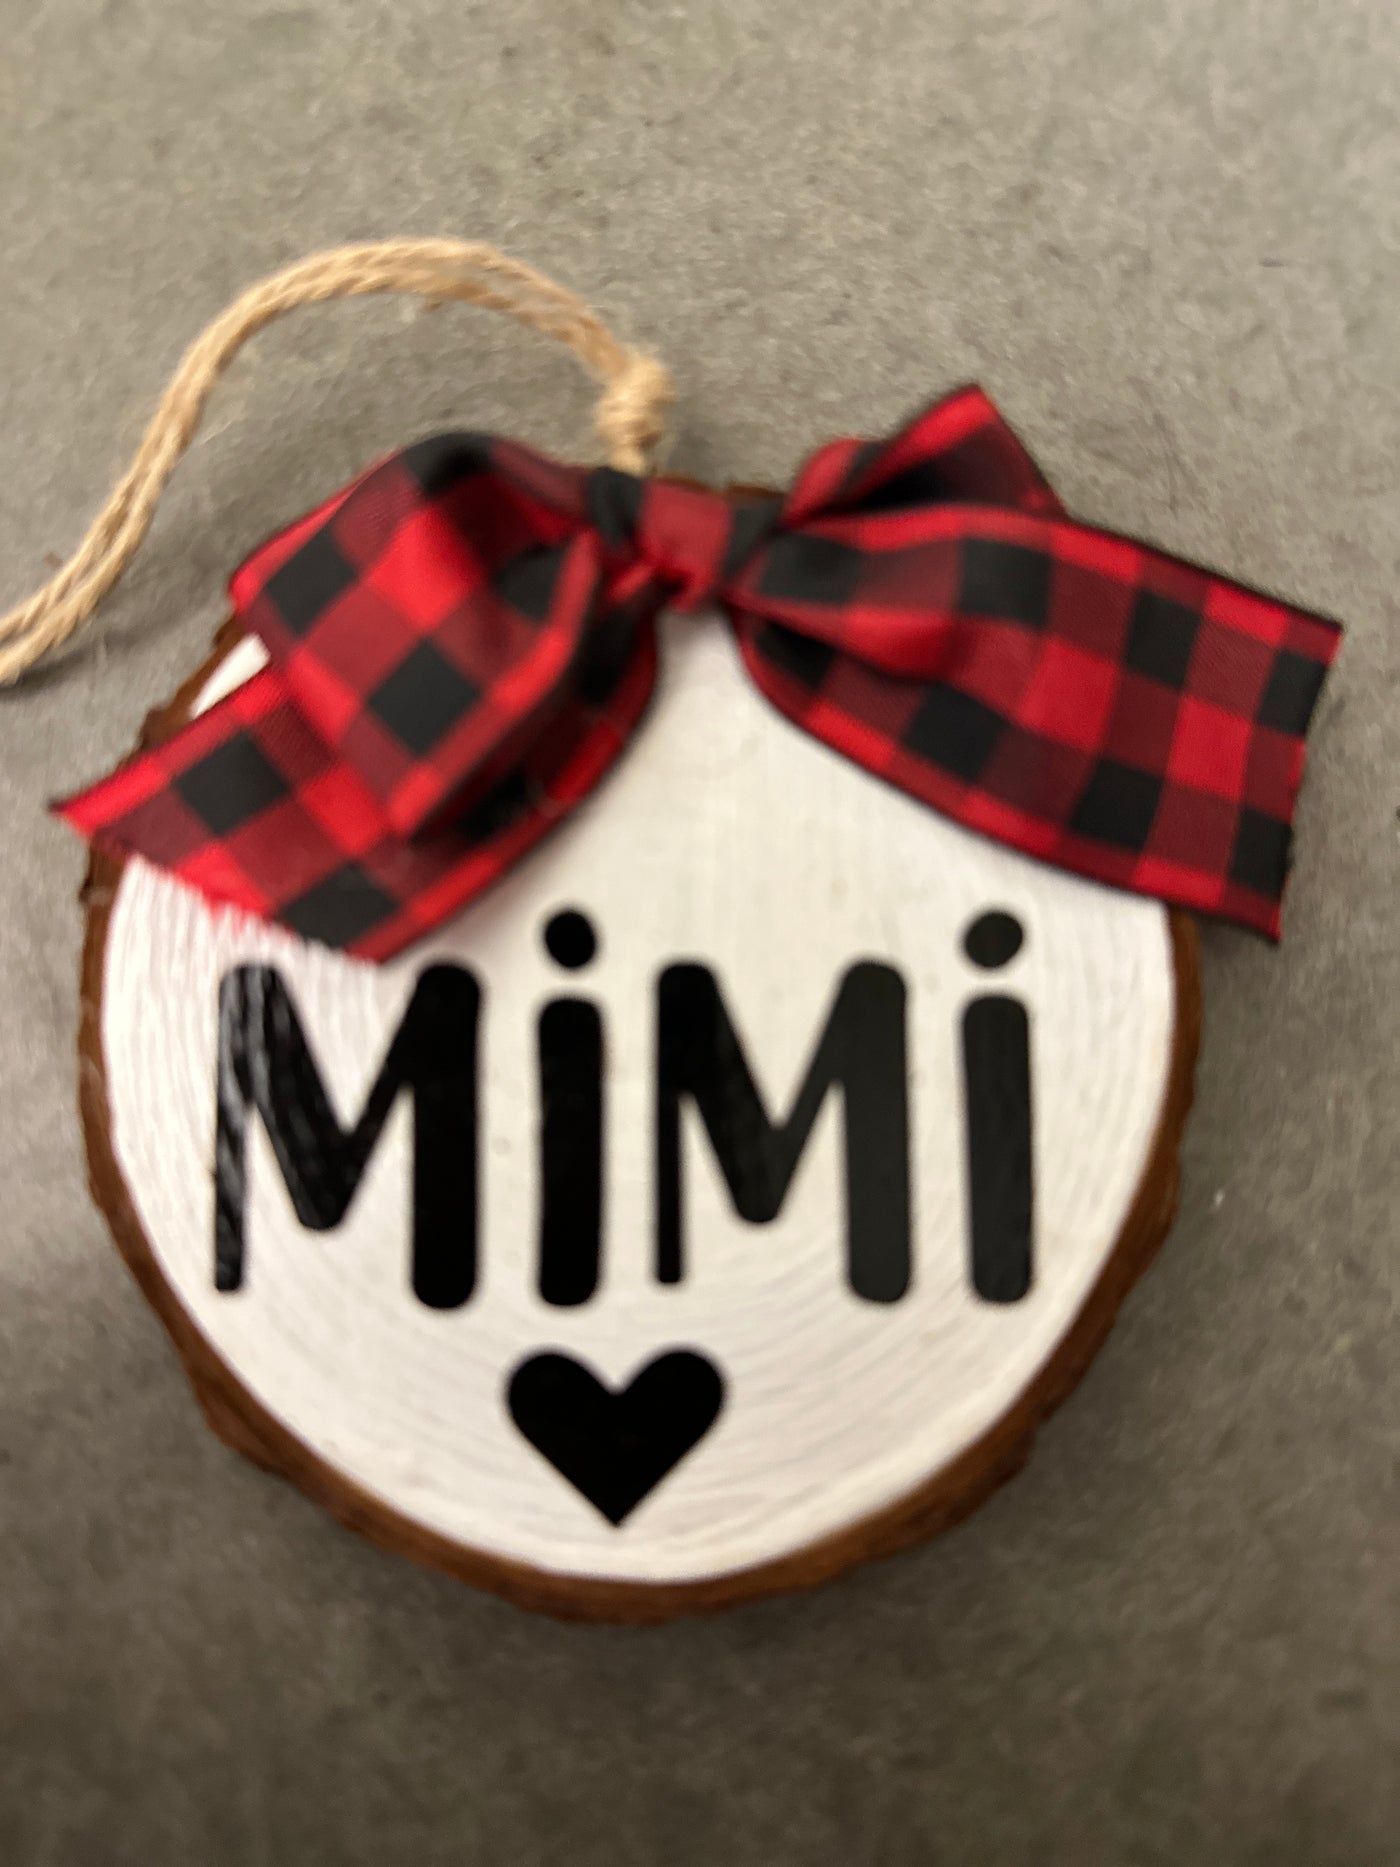 Mimi ornament